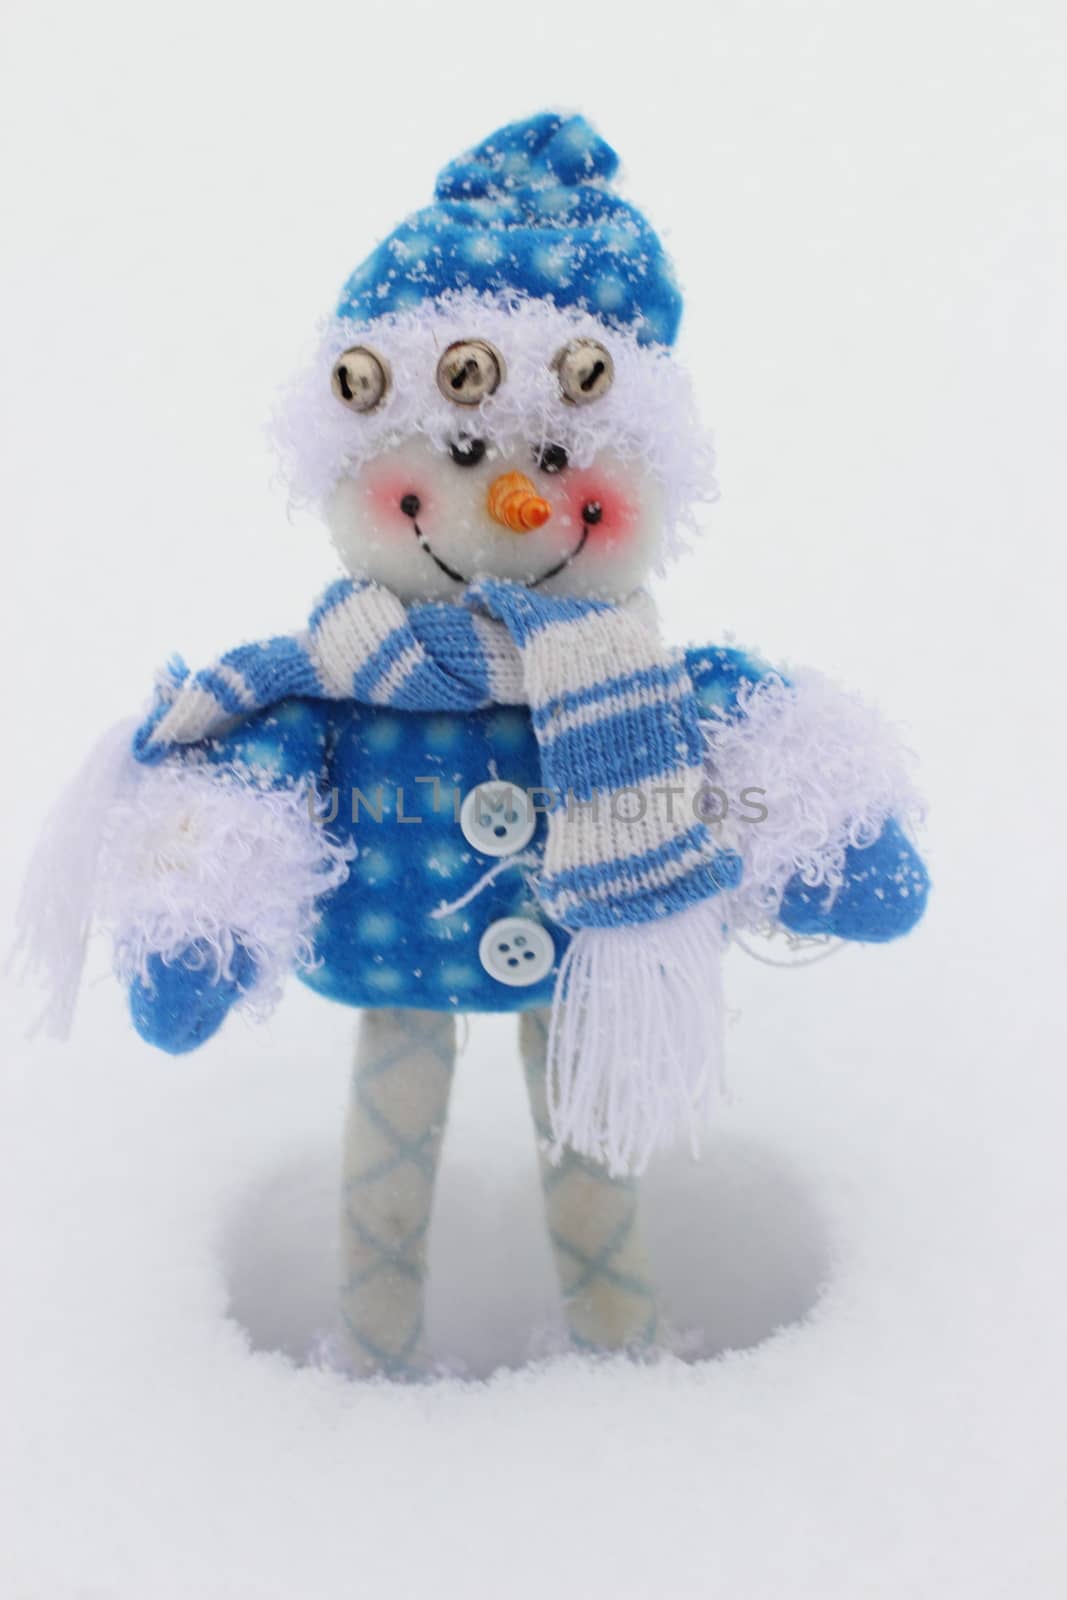 toy snowman by Metanna